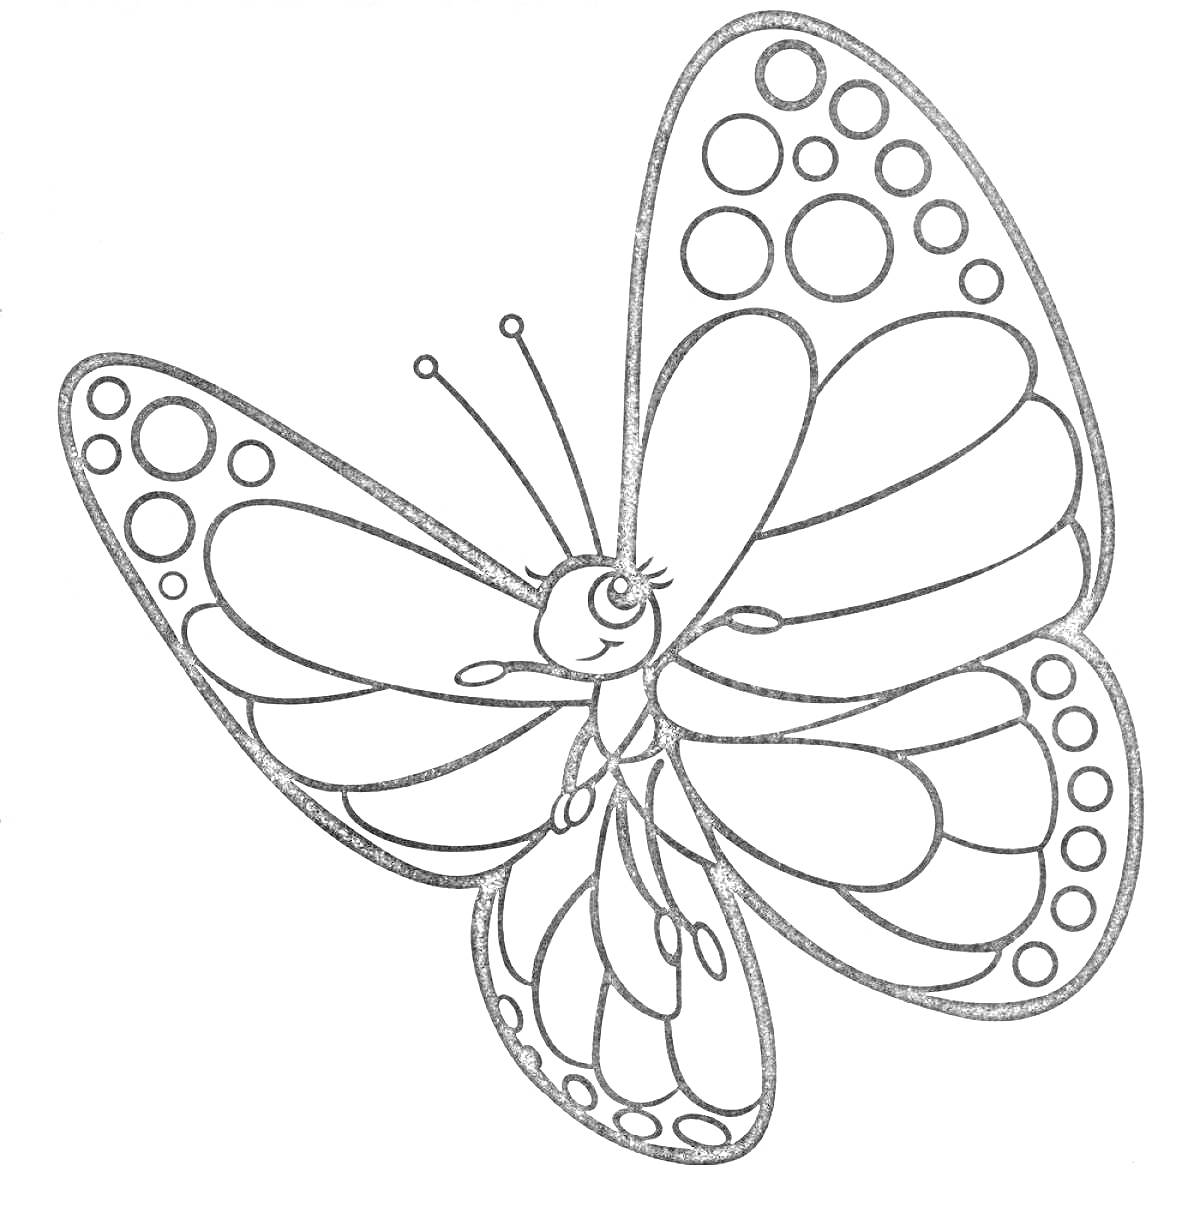 Раскраска Бабочка с узорами и точками на крыльях